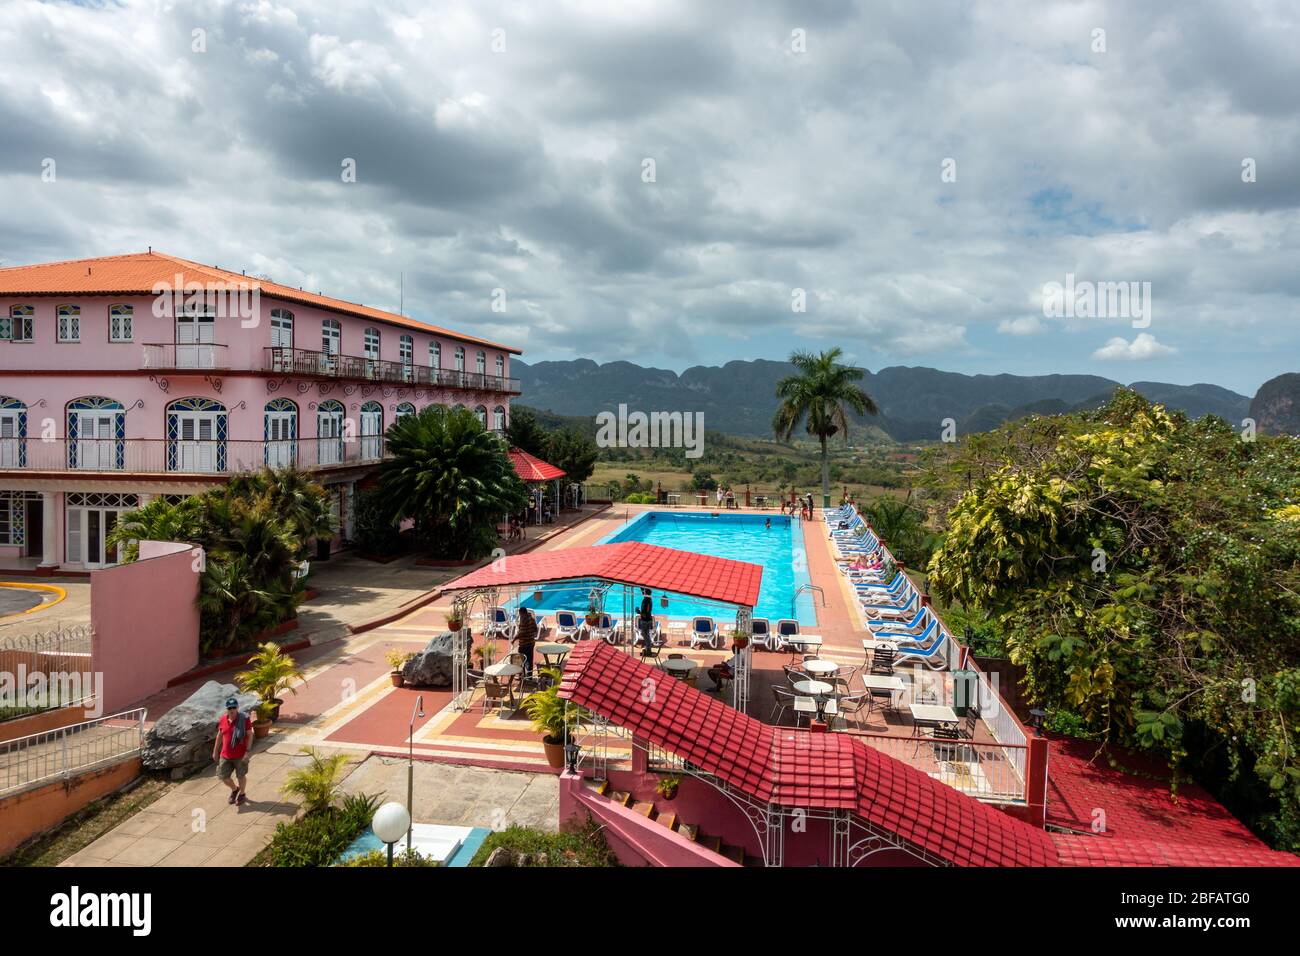 El edificio rosa del Hotel los Jazmines y su piscina junto al mirador turístico con vistas panorámicas al Valle de Vinales, Cuba Foto de stock